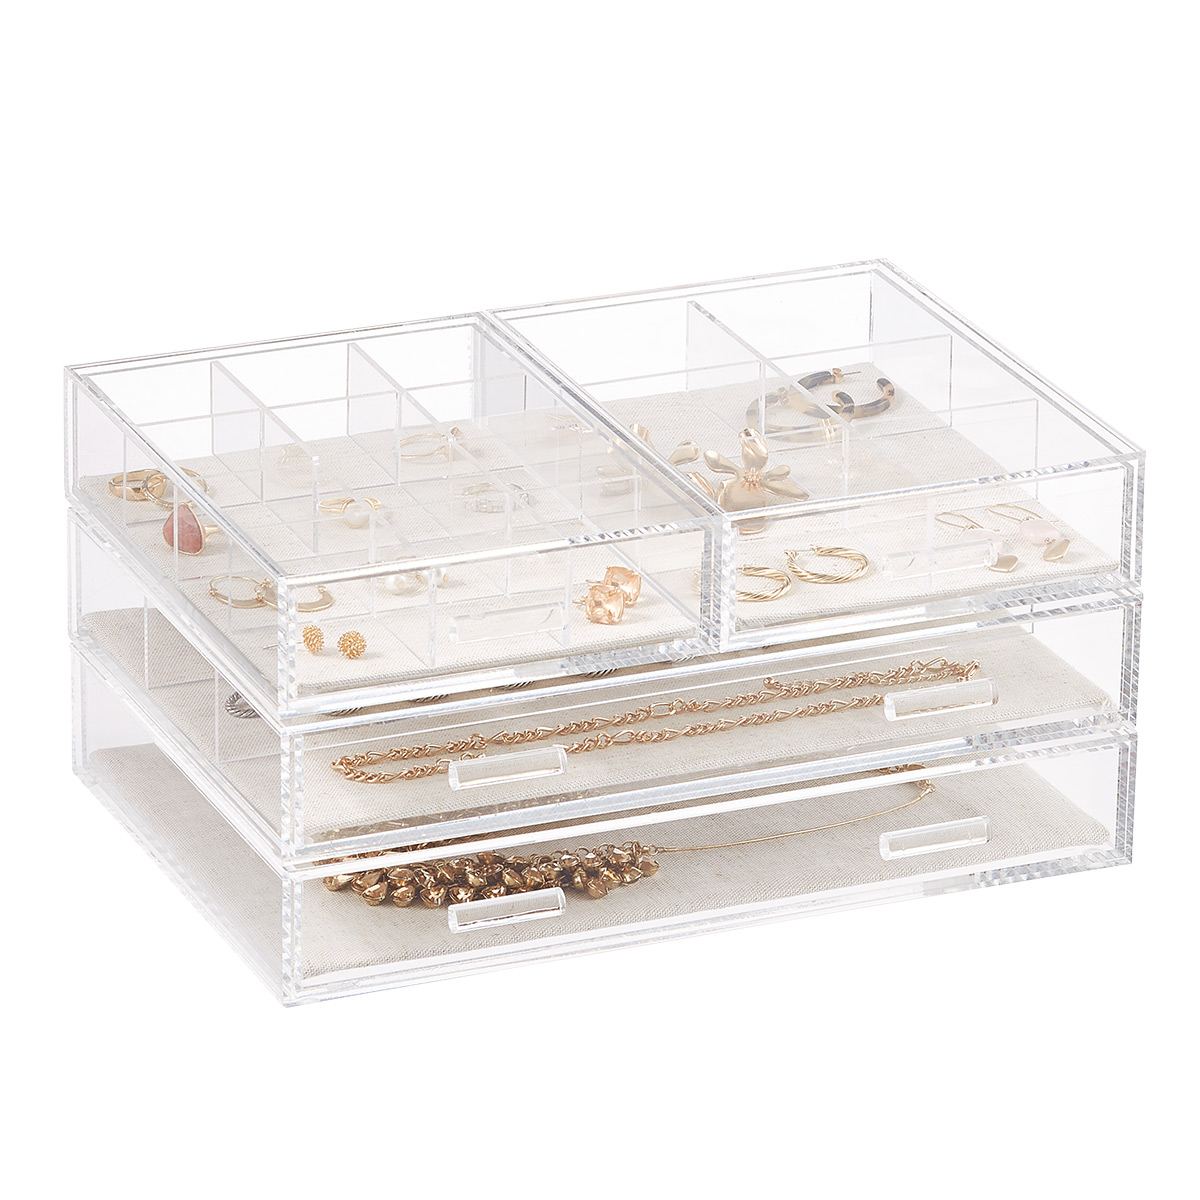 Acrylic Jewelry Storage Box, Acrylic Organizer Box